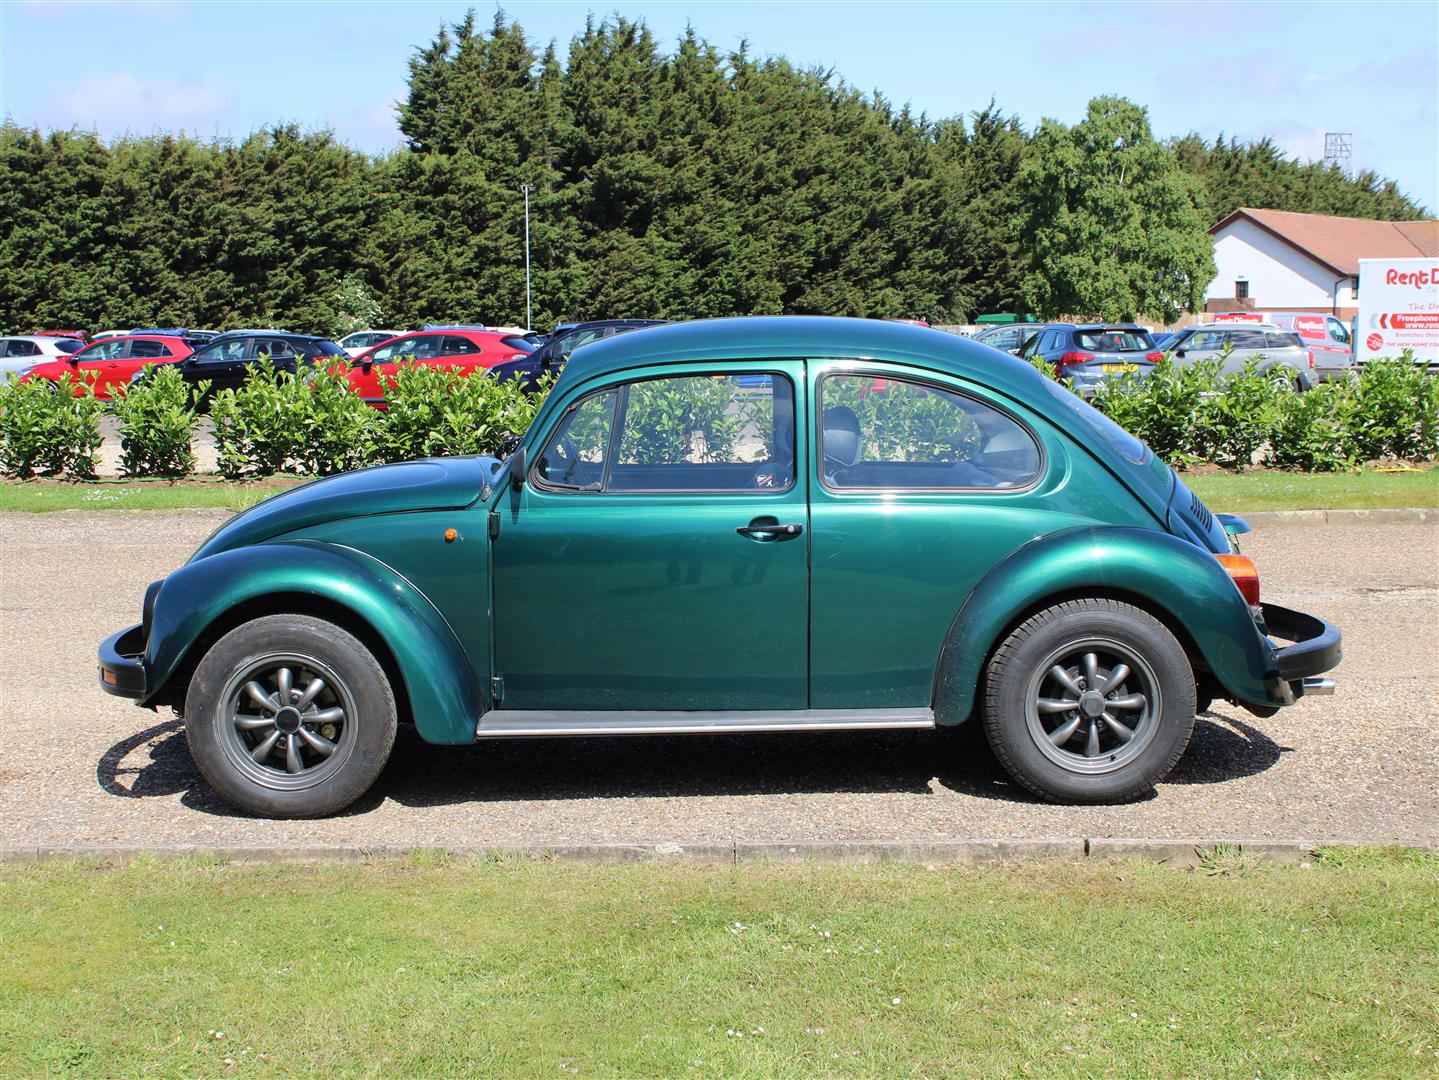 1997 VW Beetle 1600 - Image 4 of 18